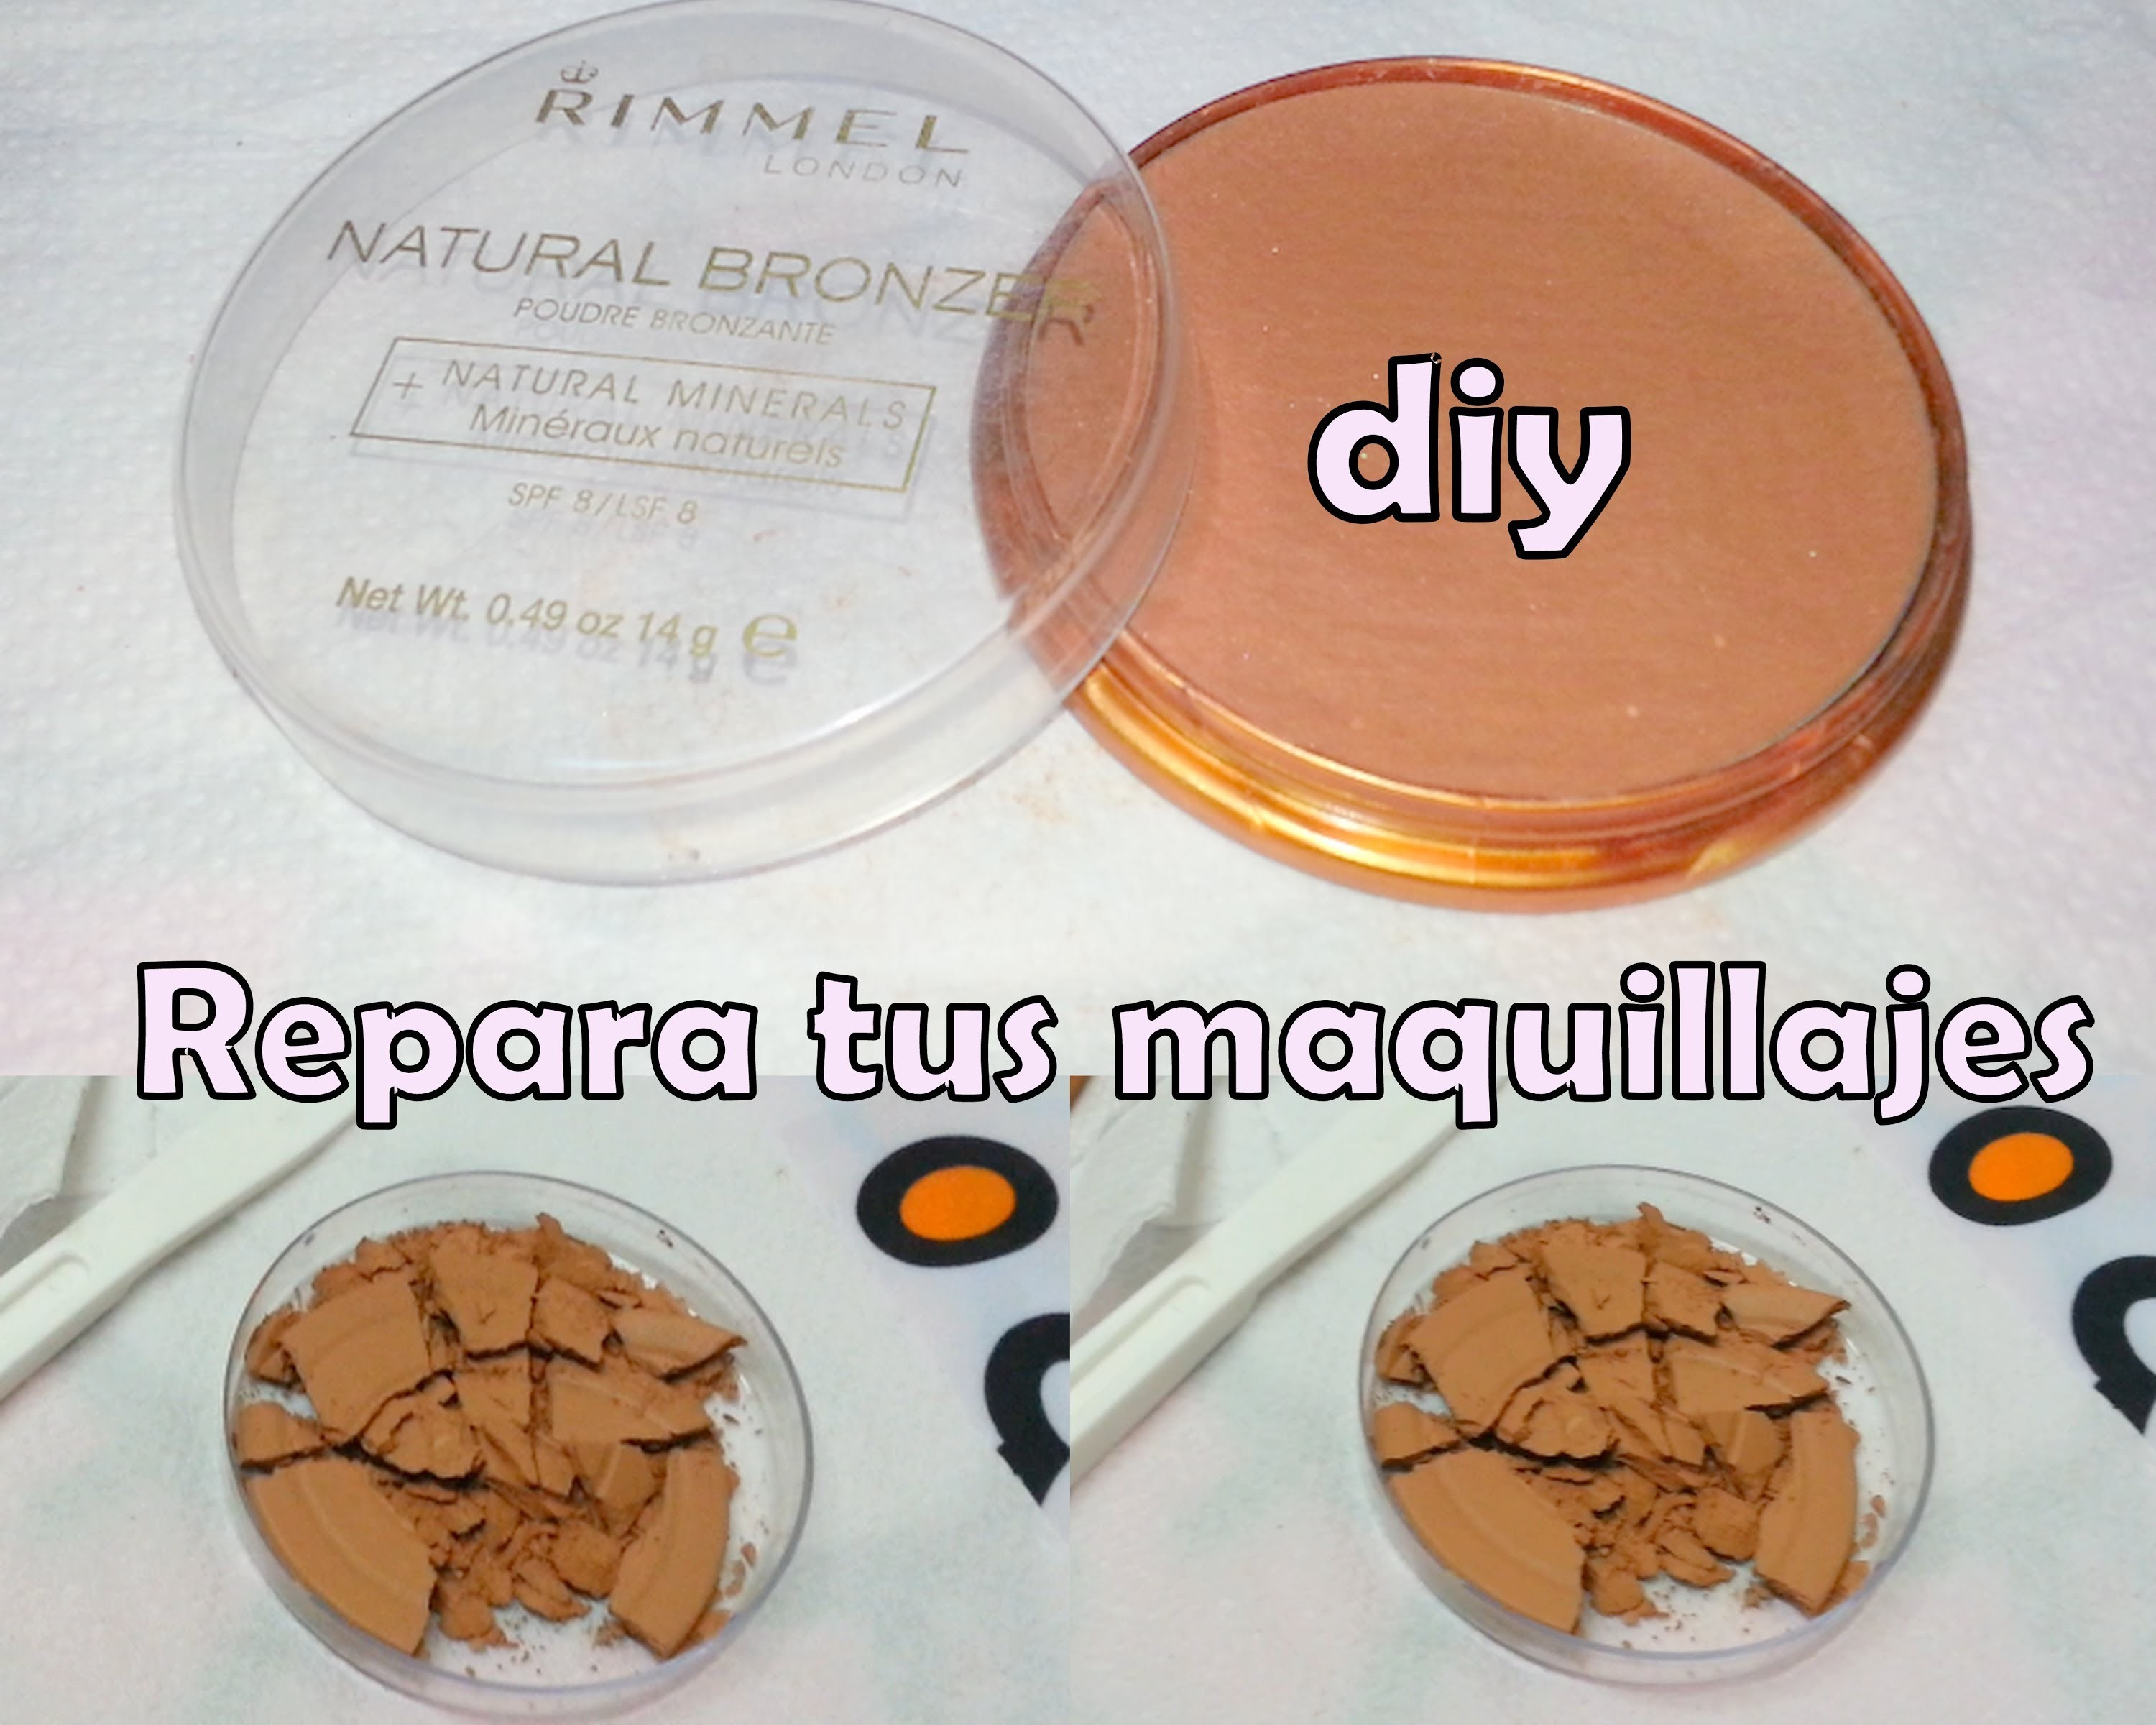 Diy:repara tus maquillajes ( repair your makeup )